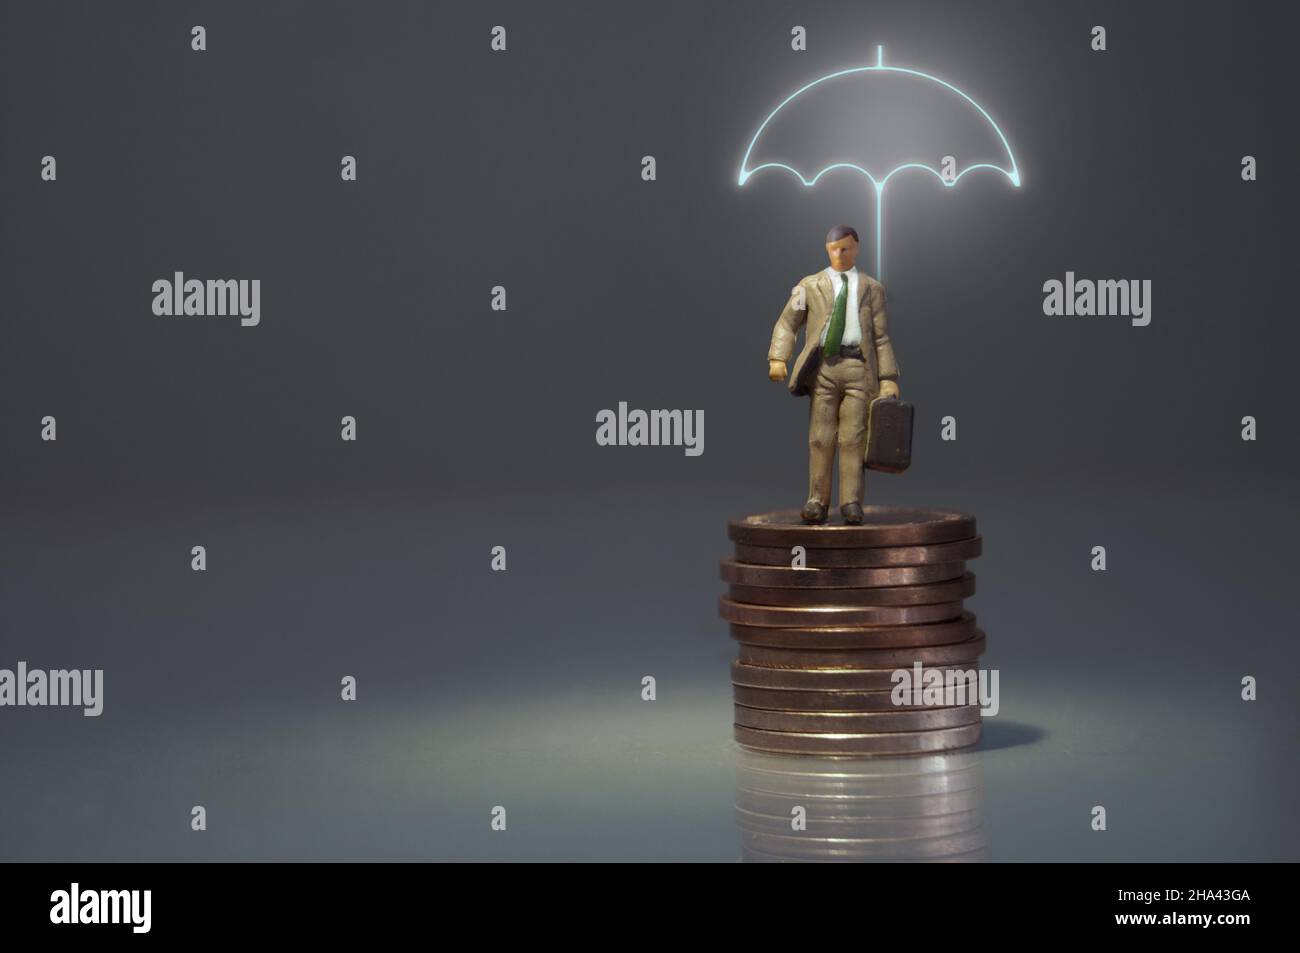 Homme miniature debout sous un parapluie éclairé sur un tas de pièces de monnaie Banque D'Images